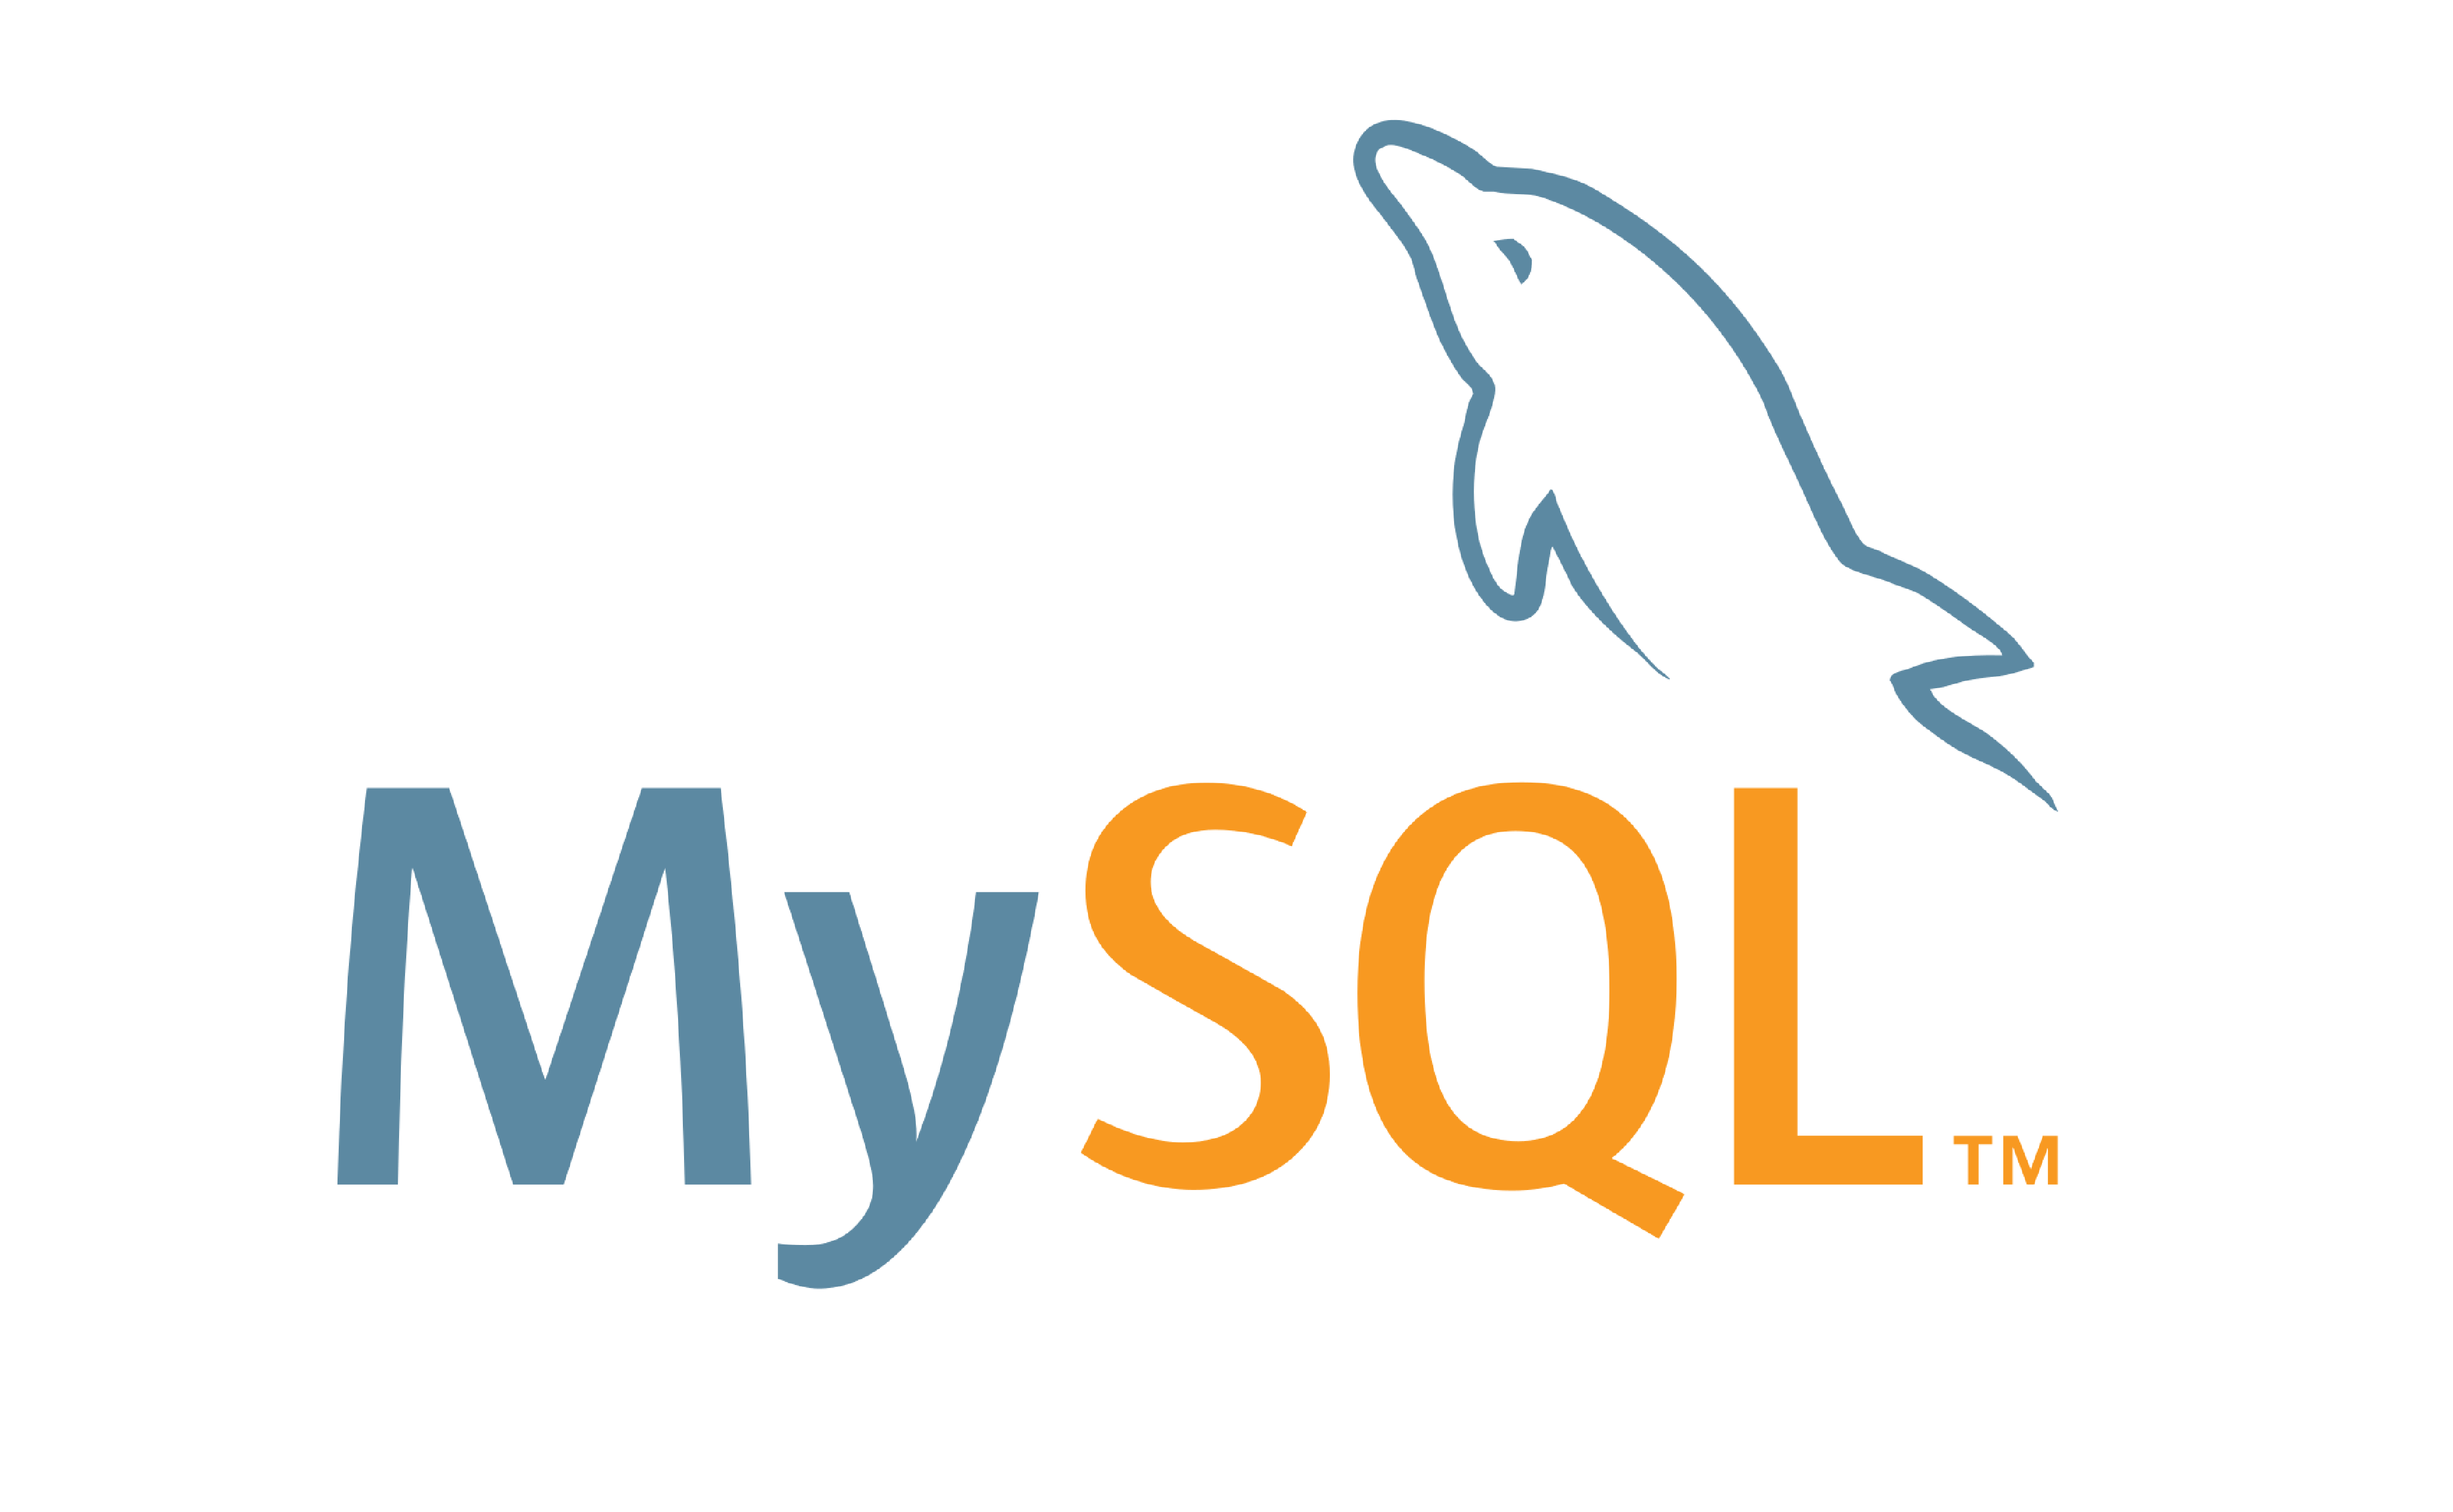 MySQL Connector